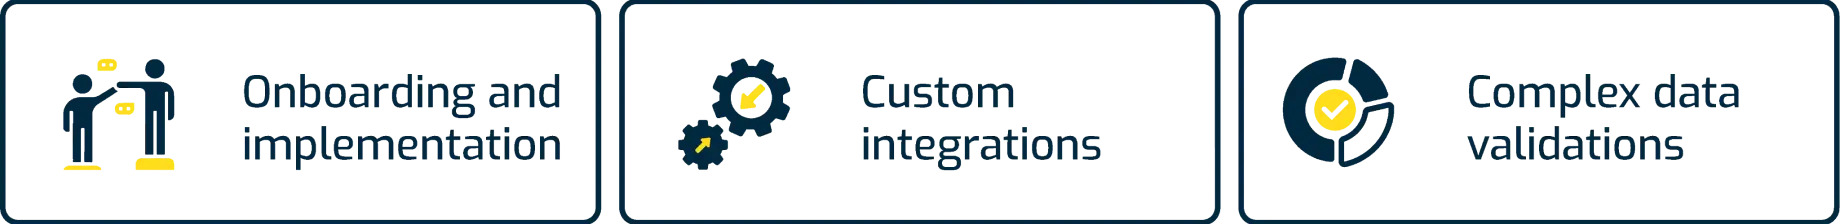 HubSpot Onboarding, Implementation, Custom Intgration And Data Validation Solution